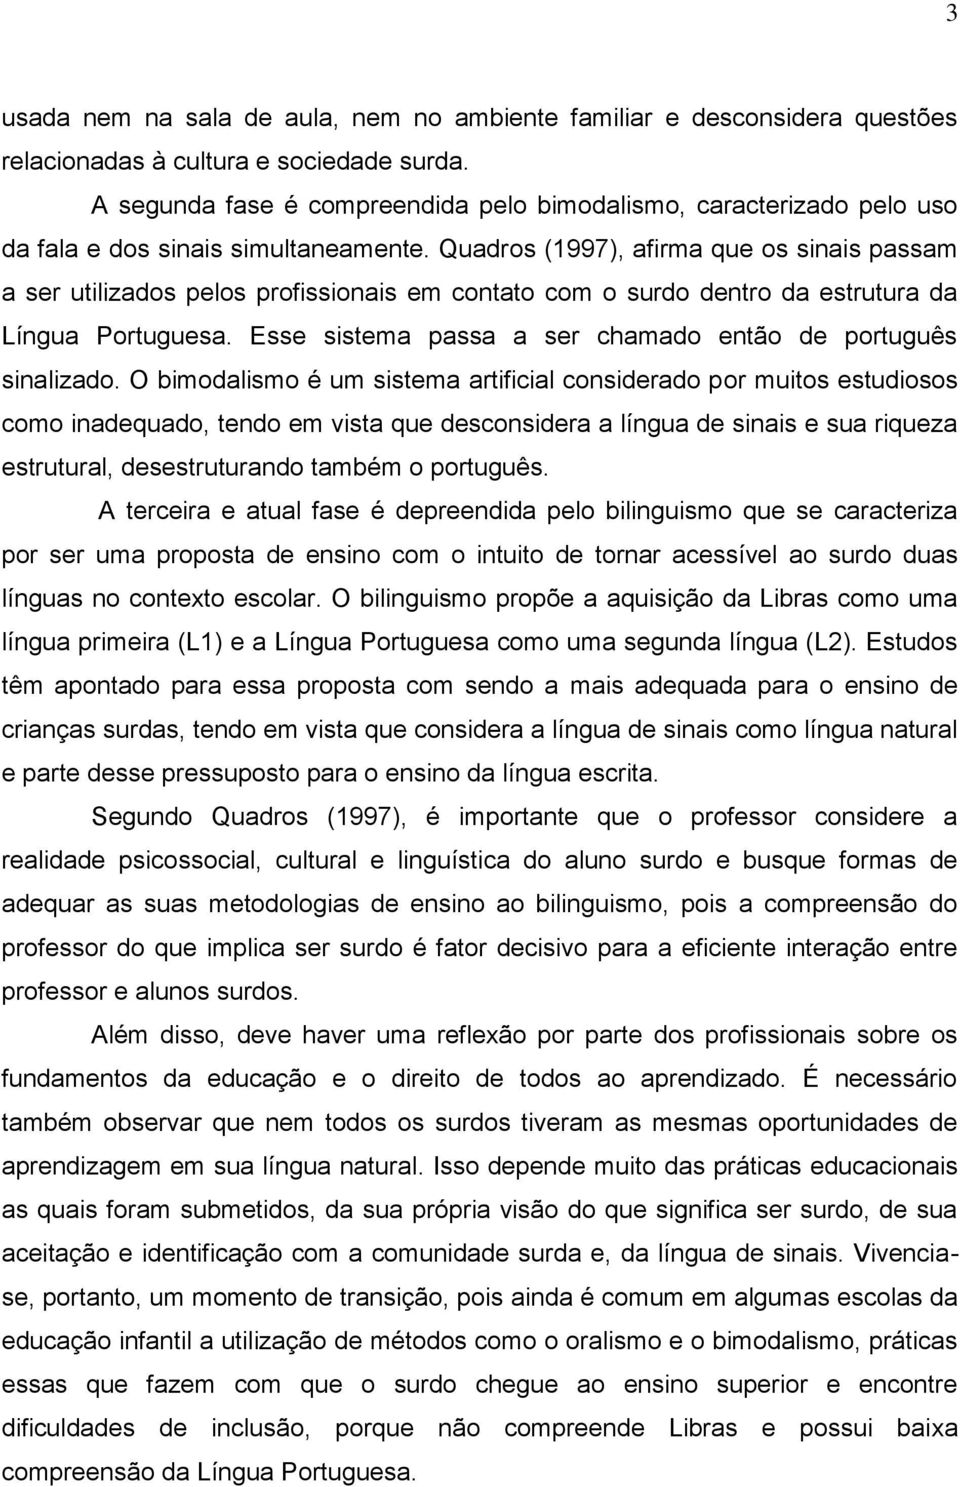 Quadros (1997), afirma que os sinais passam a ser utilizados pelos profissionais em contato com o surdo dentro da estrutura da Língua Portuguesa.